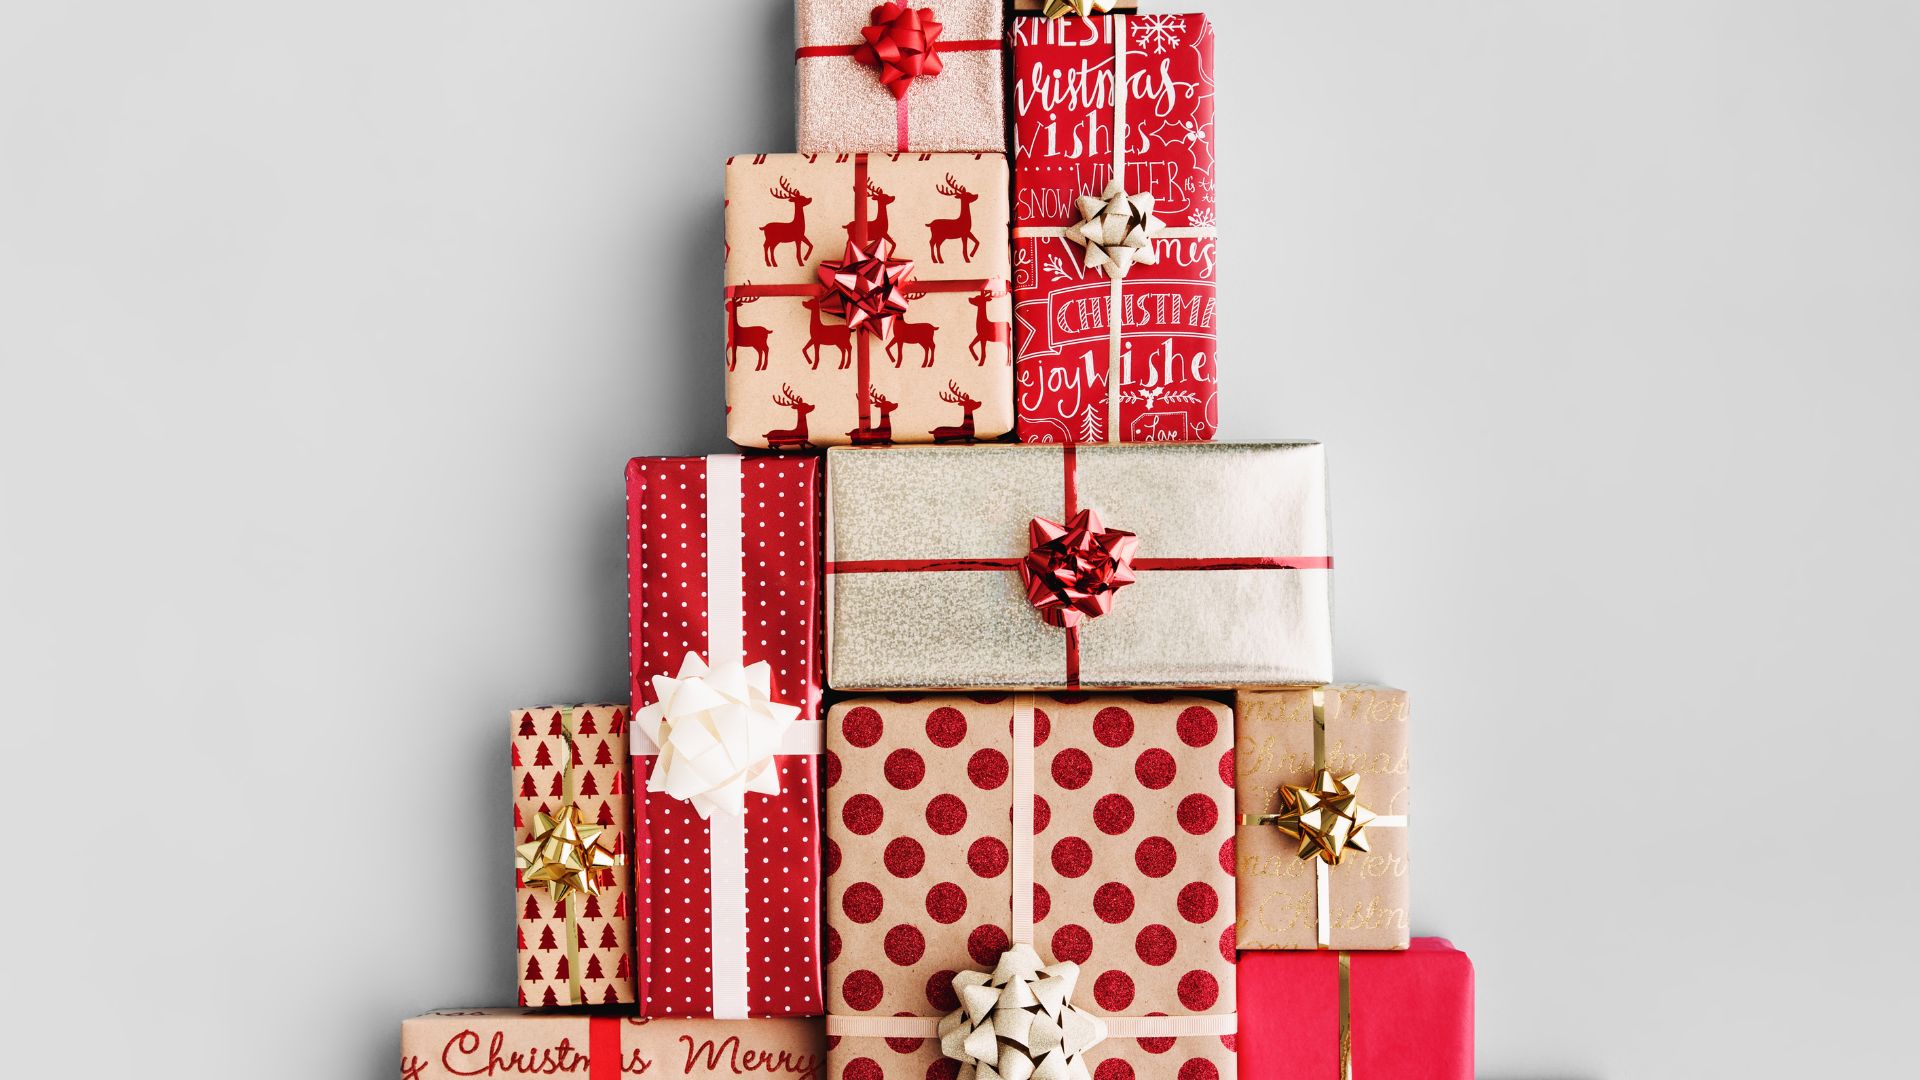 Imagem de fundo branco. Ao centro da mesma, várias caixas de presentes de Natal. Elas estão empilhadas, decoradas com fitas e laços nas cores vermelho, bege e dourado.